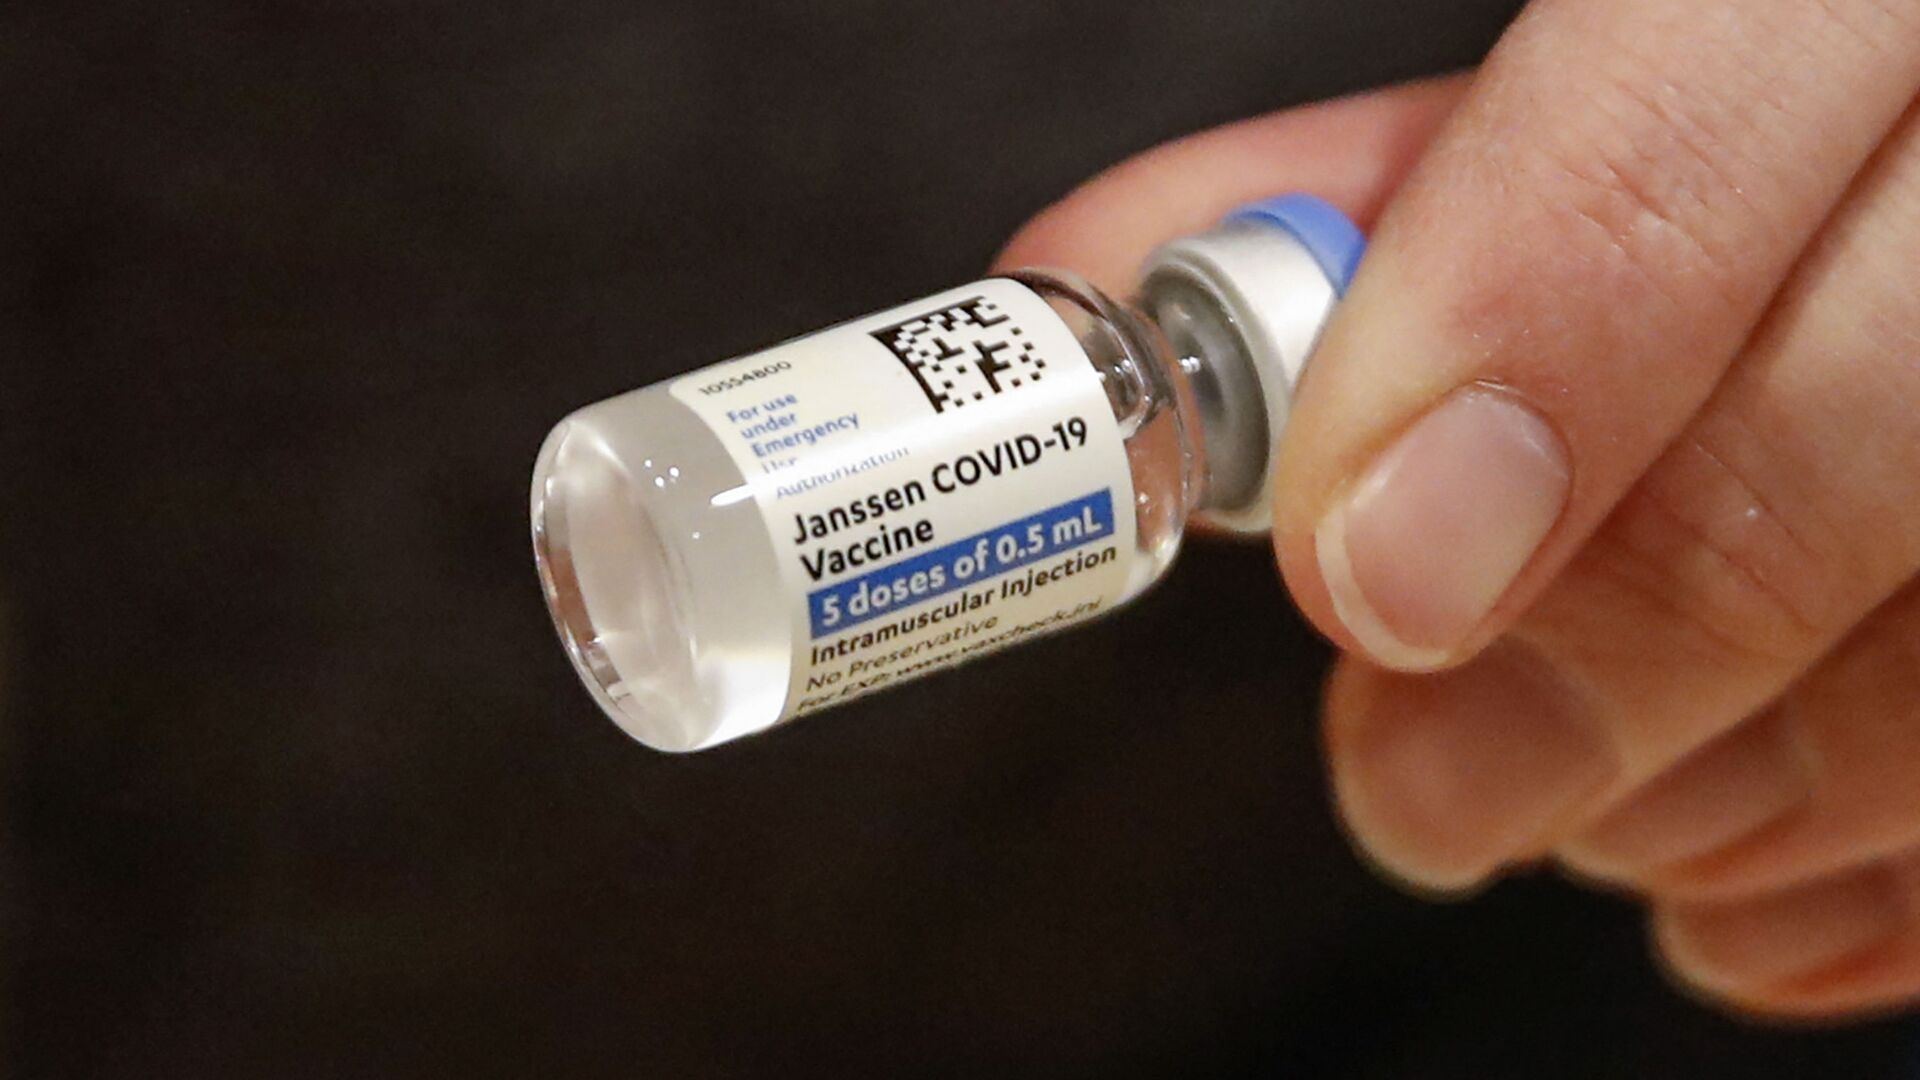 Le vaccin Janssen Covid-19 produit par Johnson & Johnson - Sputnik Afrique, 1920, 13.07.2021